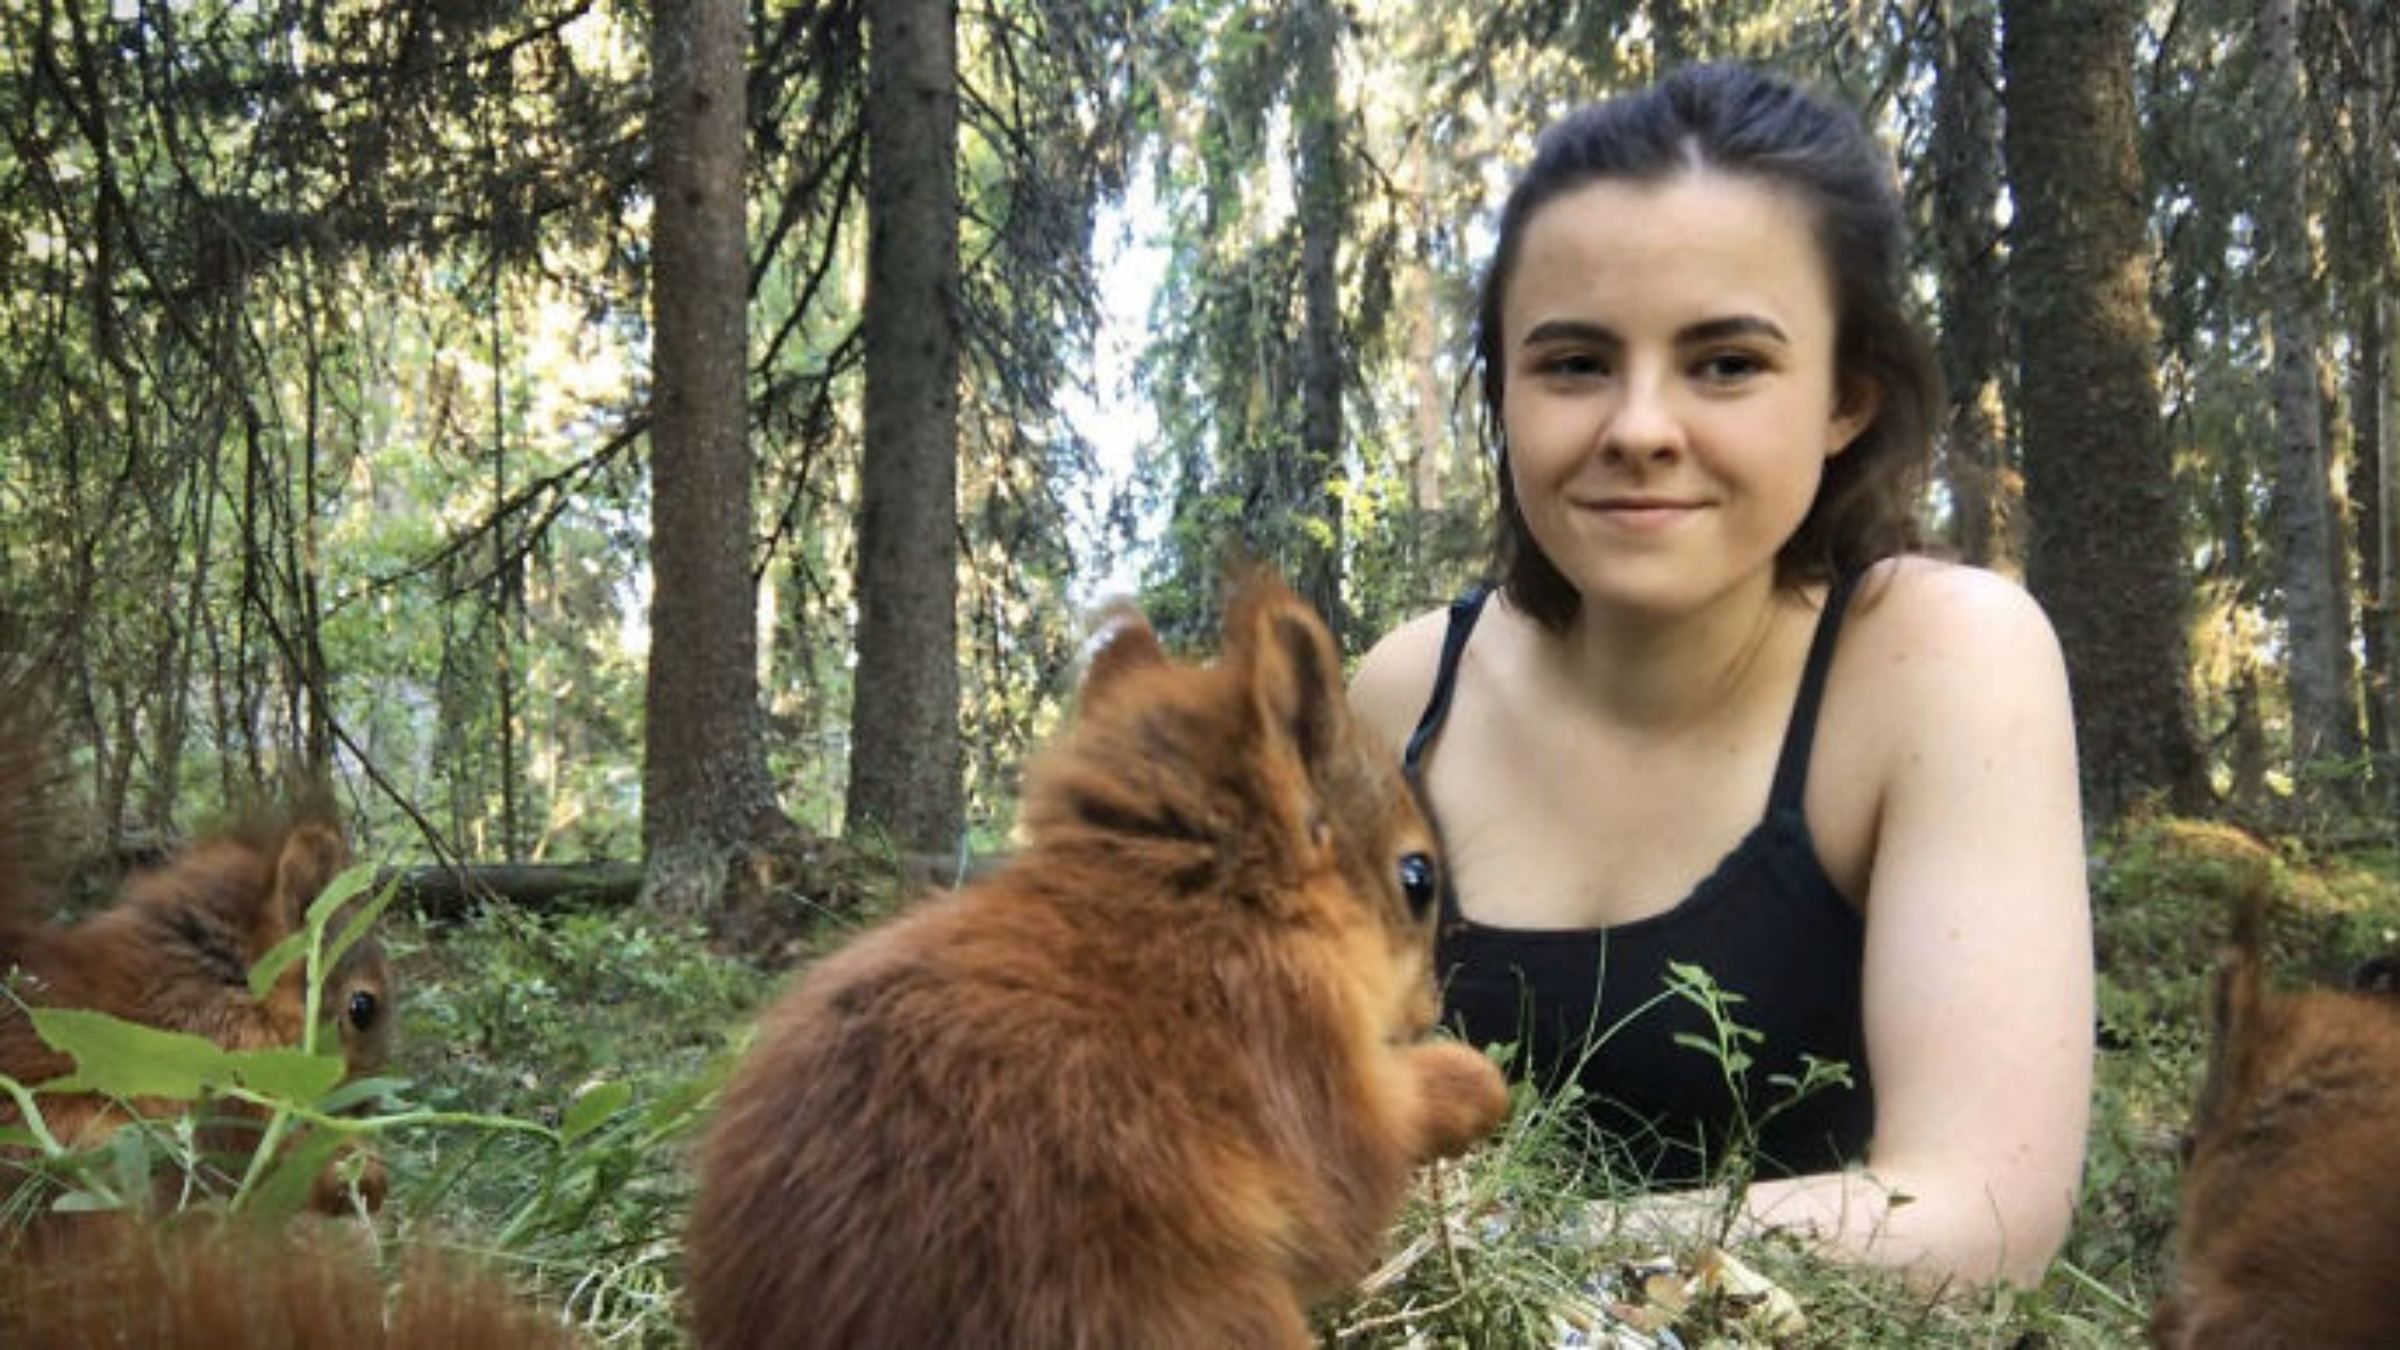 Надзвичайно милий звук: дівчина записала відео з білченям, який жує горішок - Pets